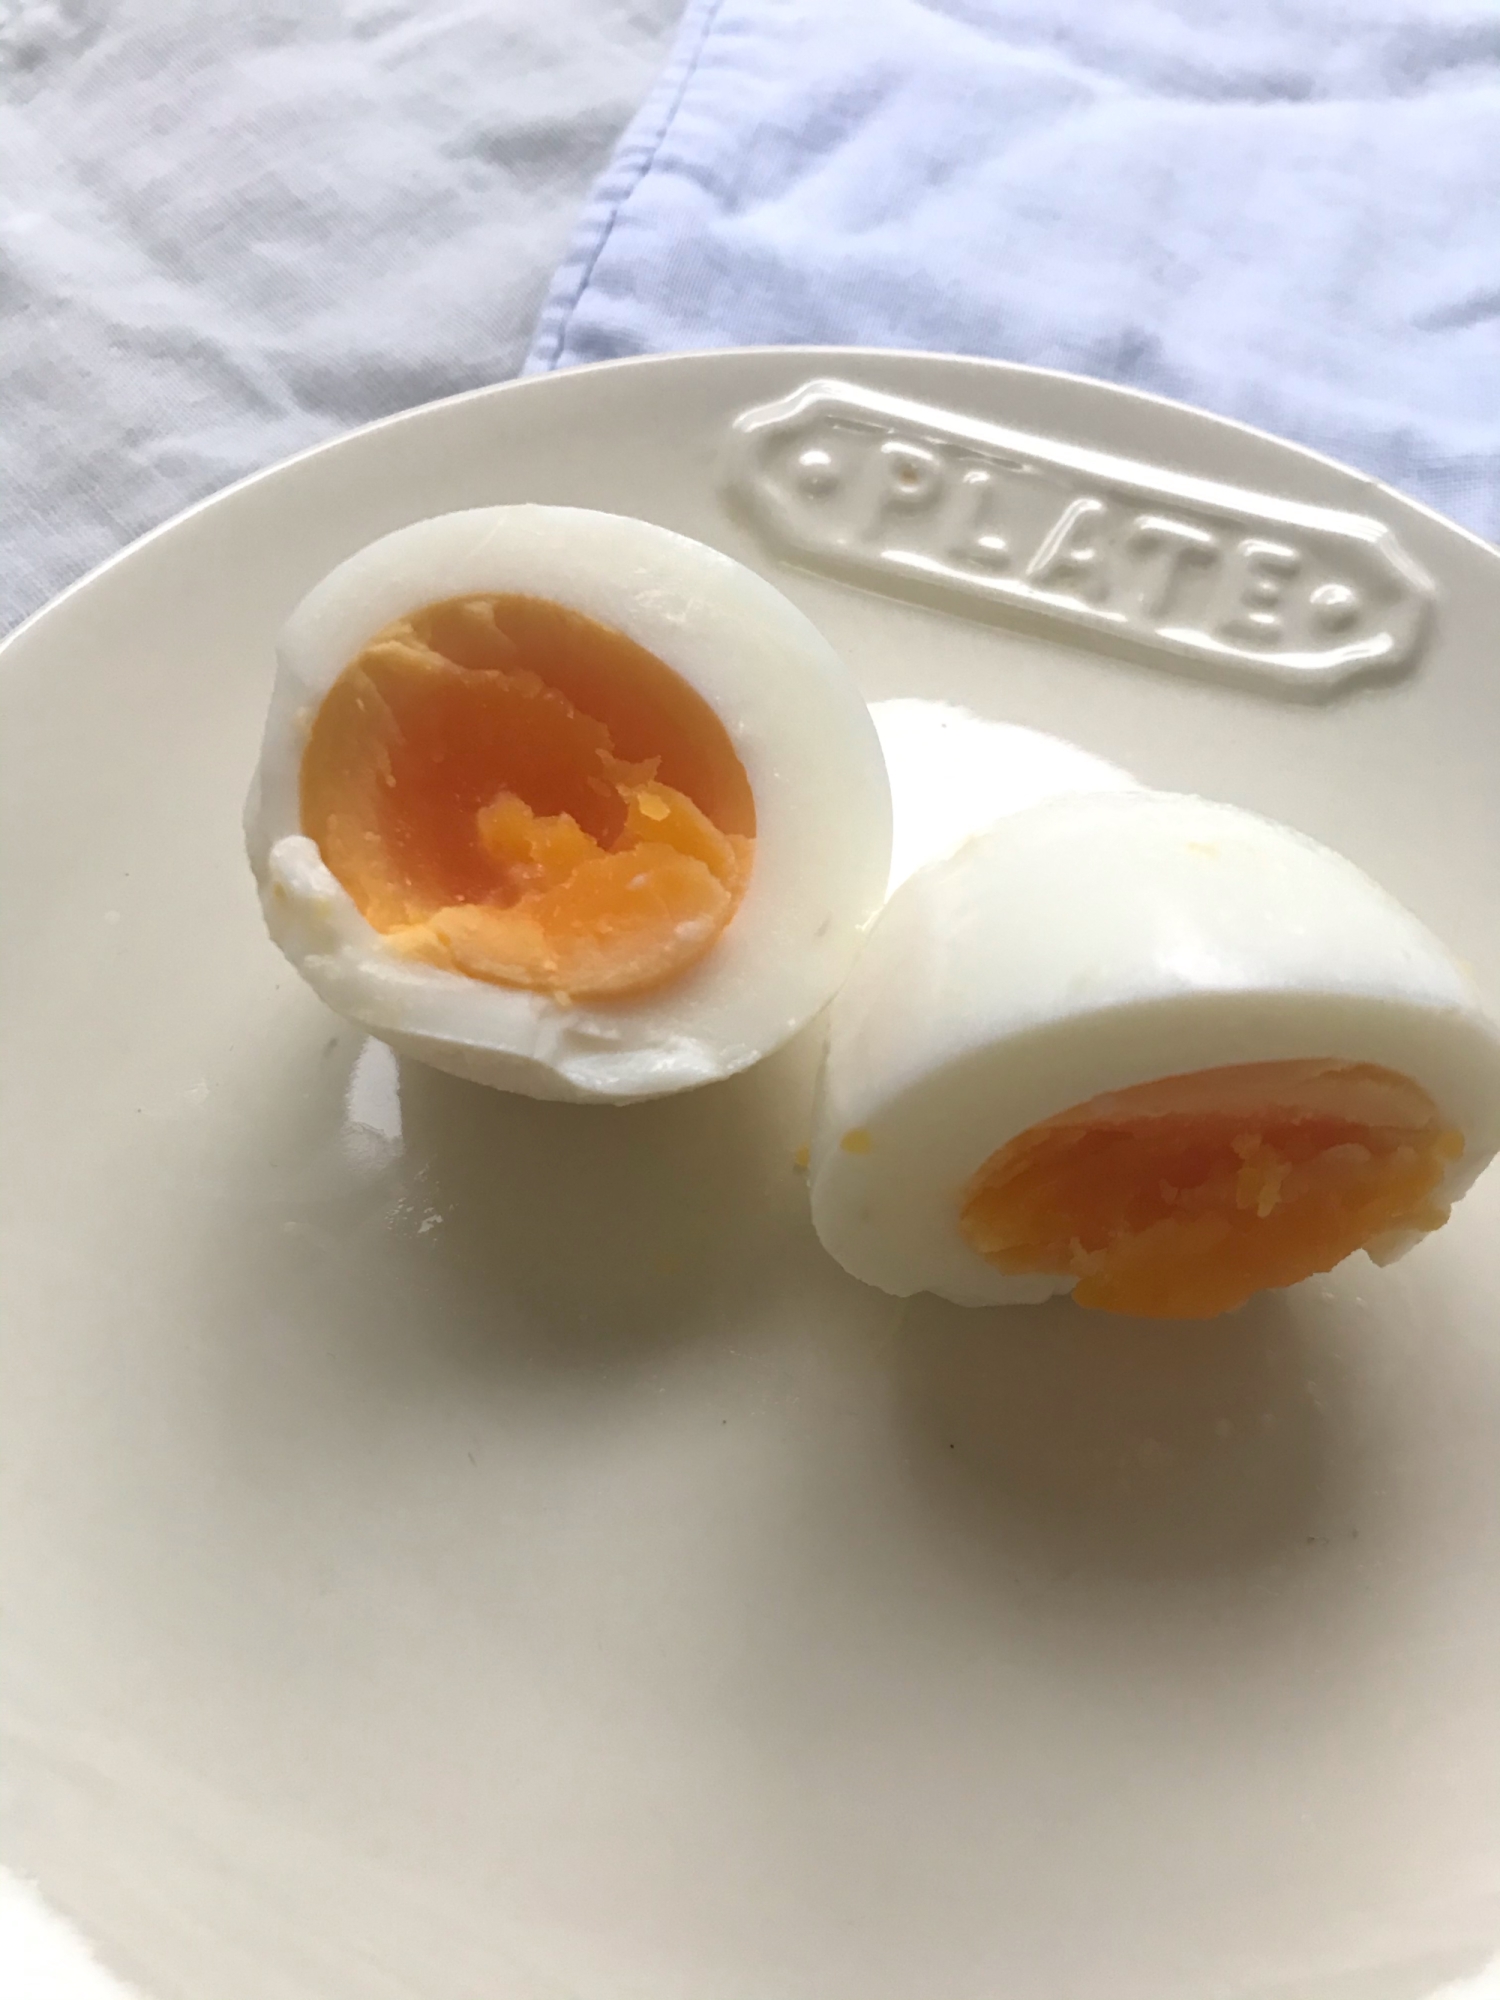 塩麹de味付き卵